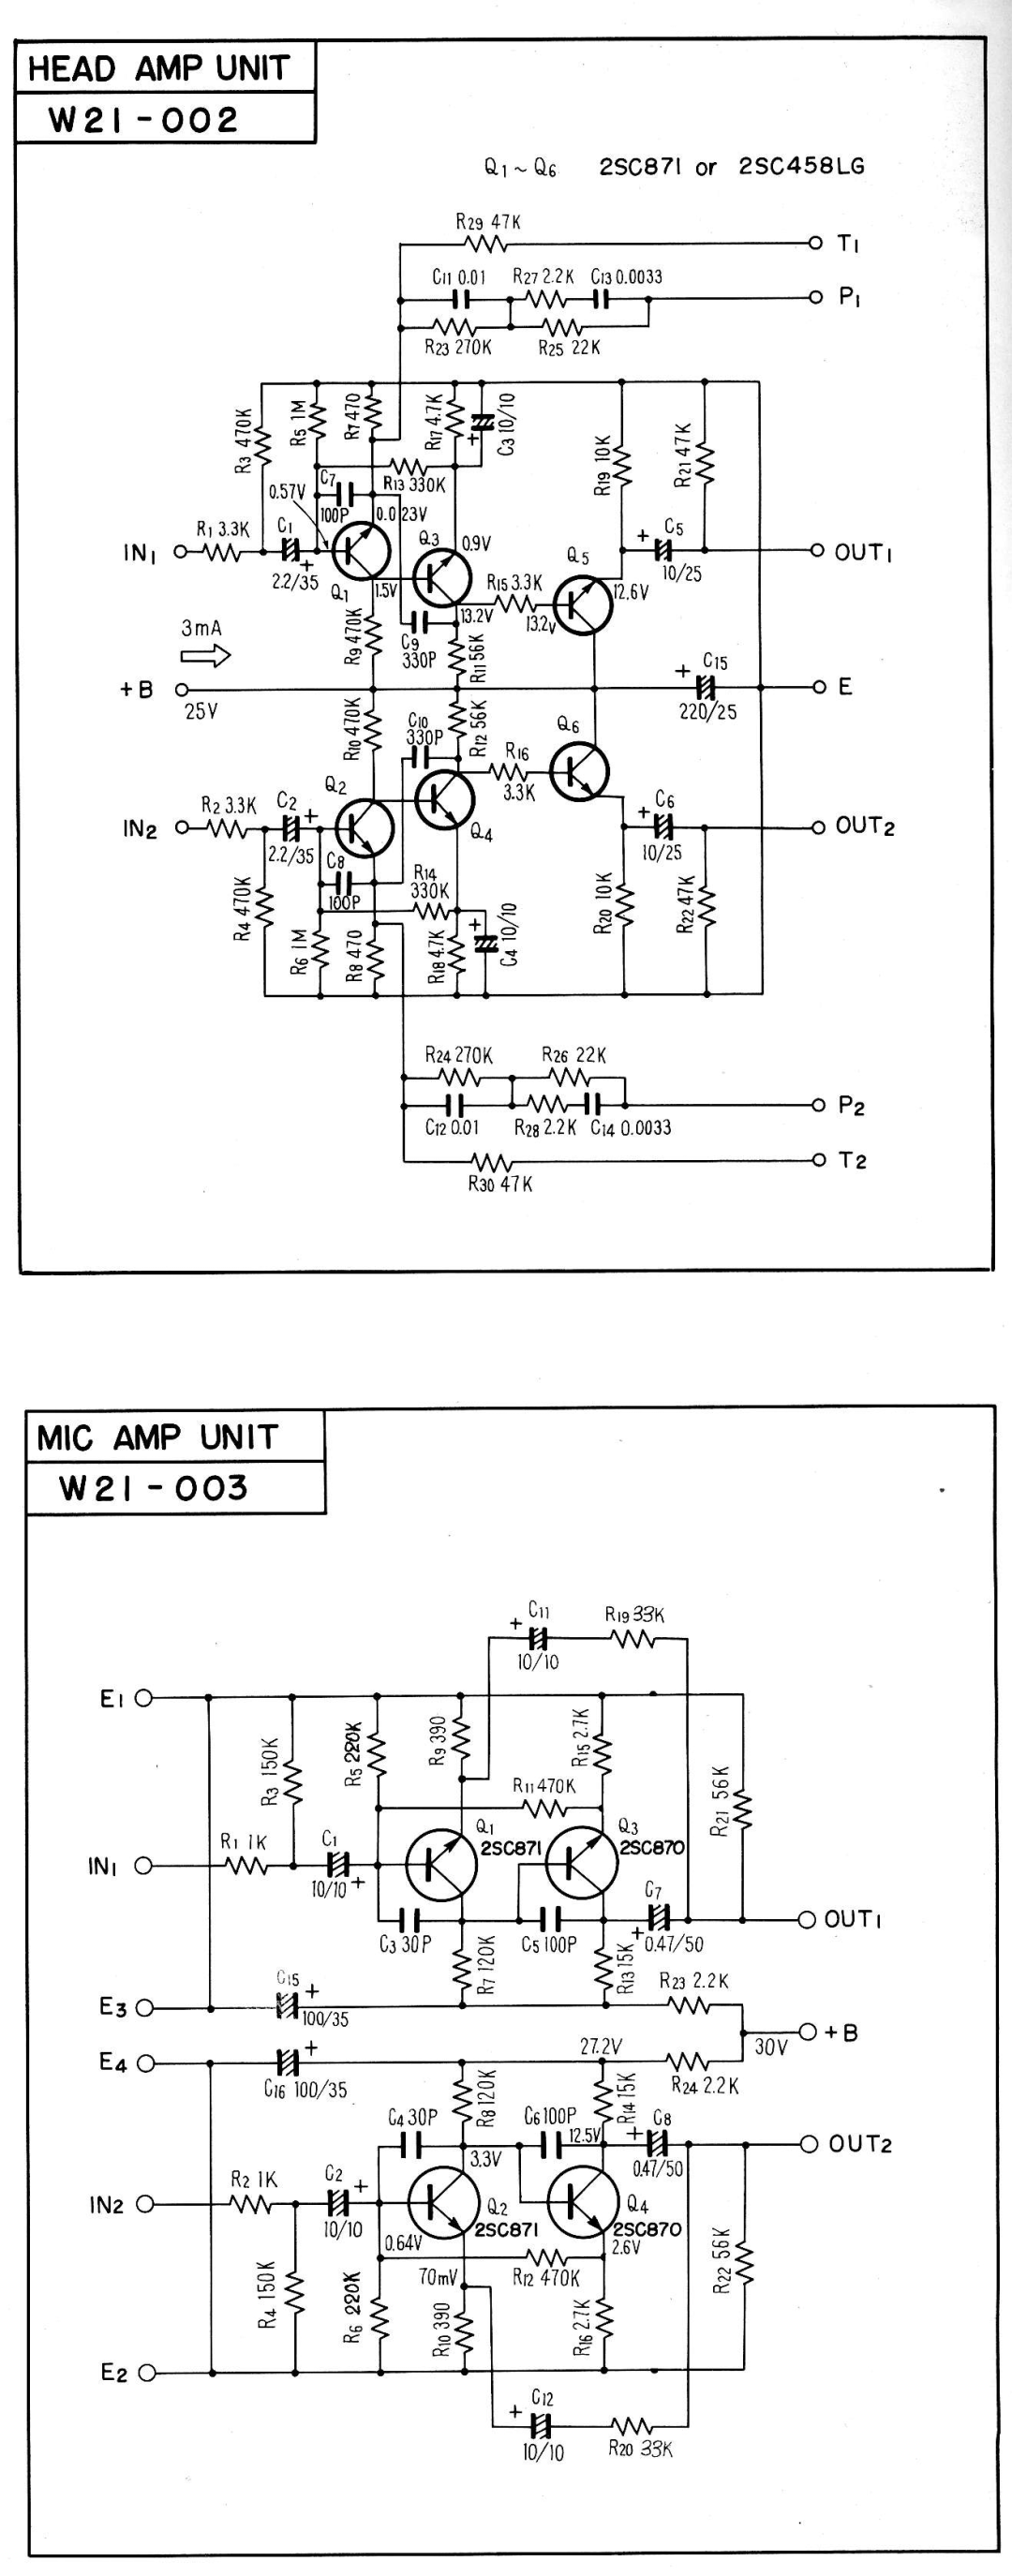 Pioneer SX-9000 service manual w 2 r - o o, w 2 t- o o, Headampunit, Mic Amp Unit 